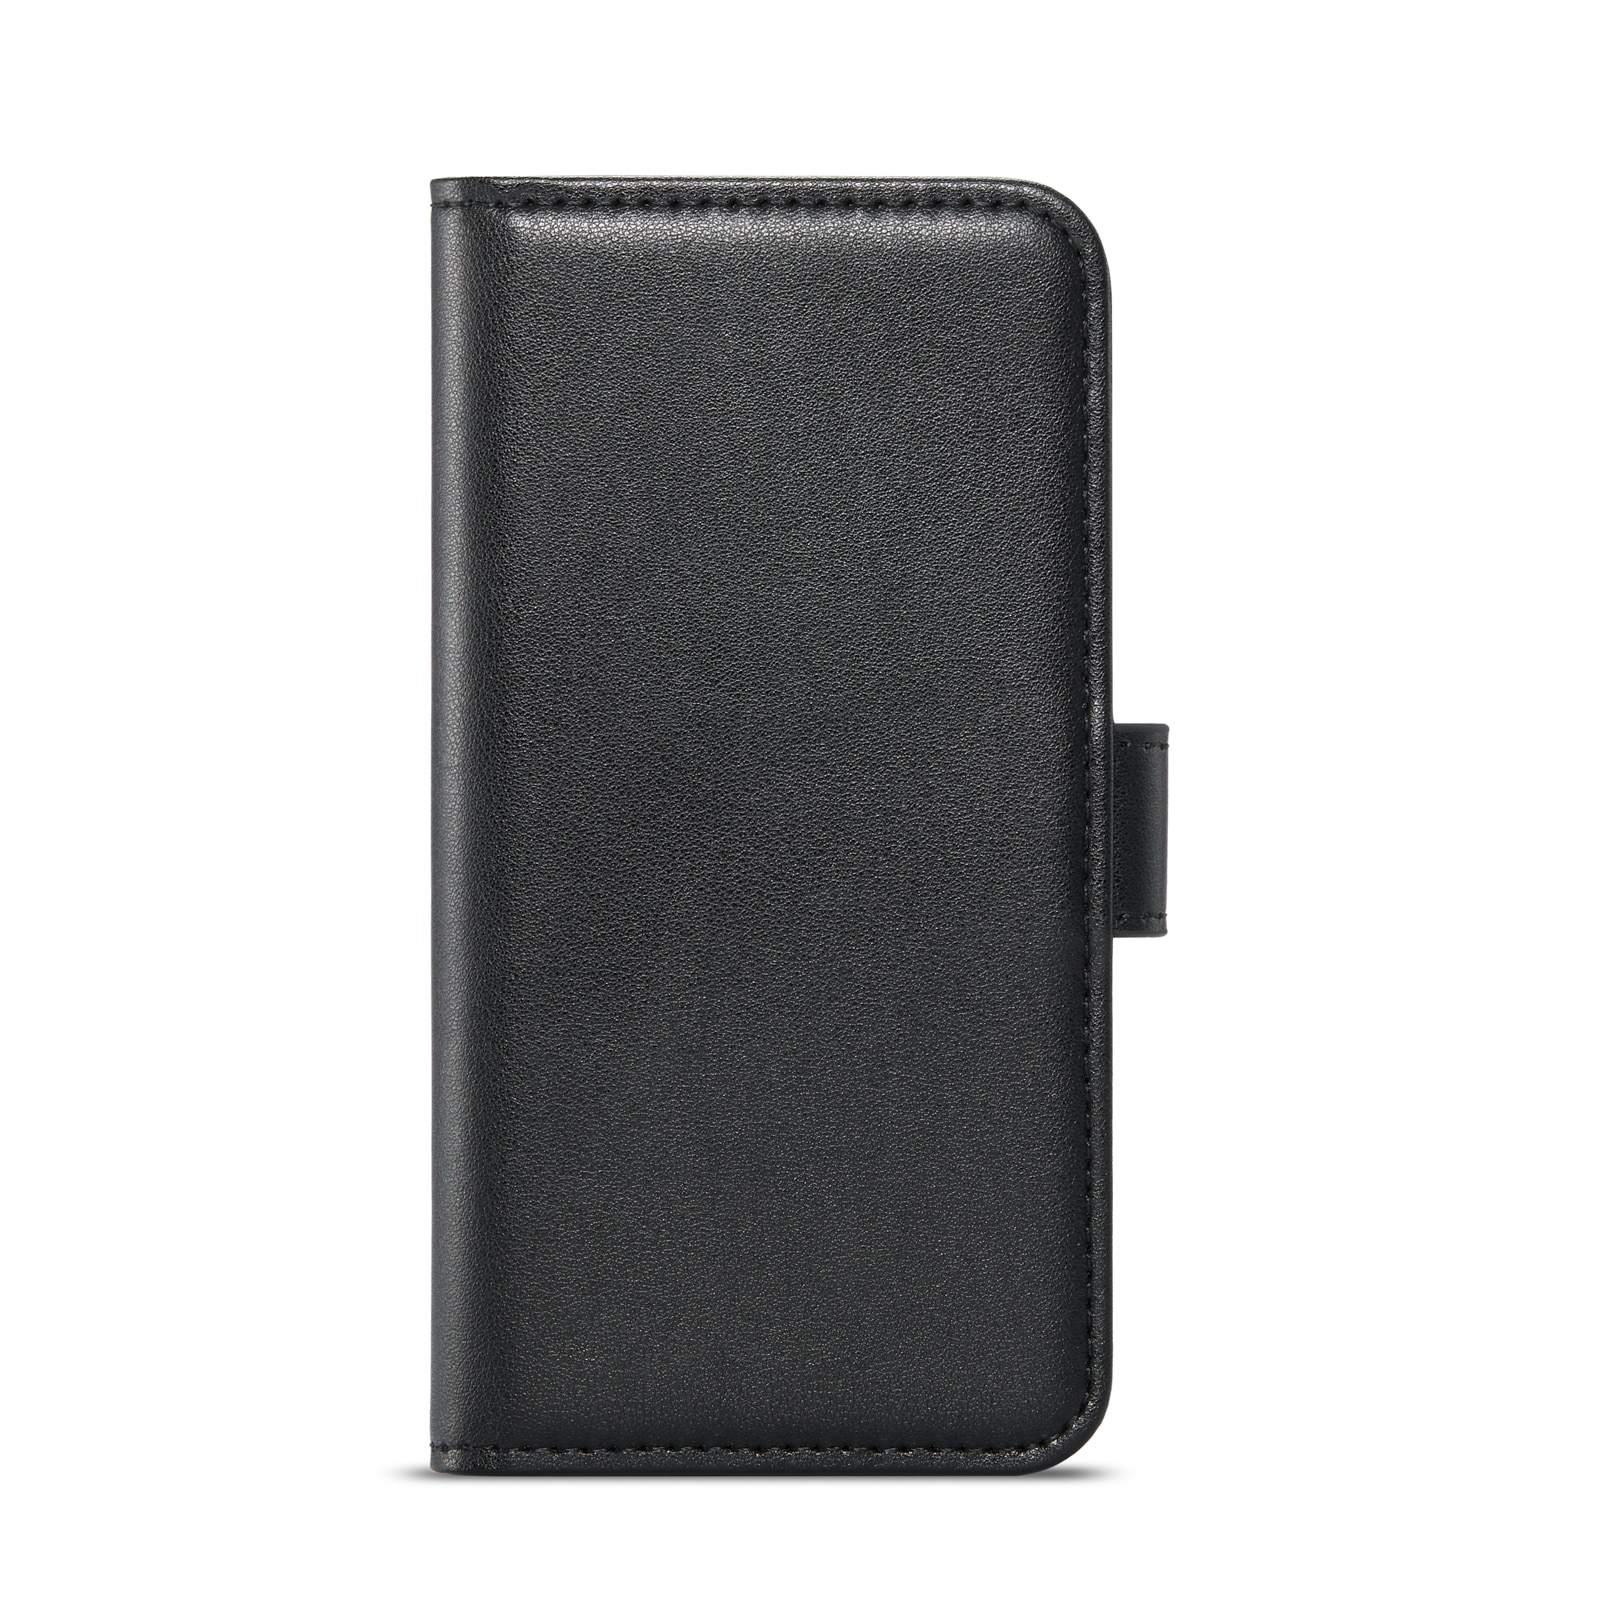 iPhone SE (2022) Plånboksfodral i Äkta Läder, svart